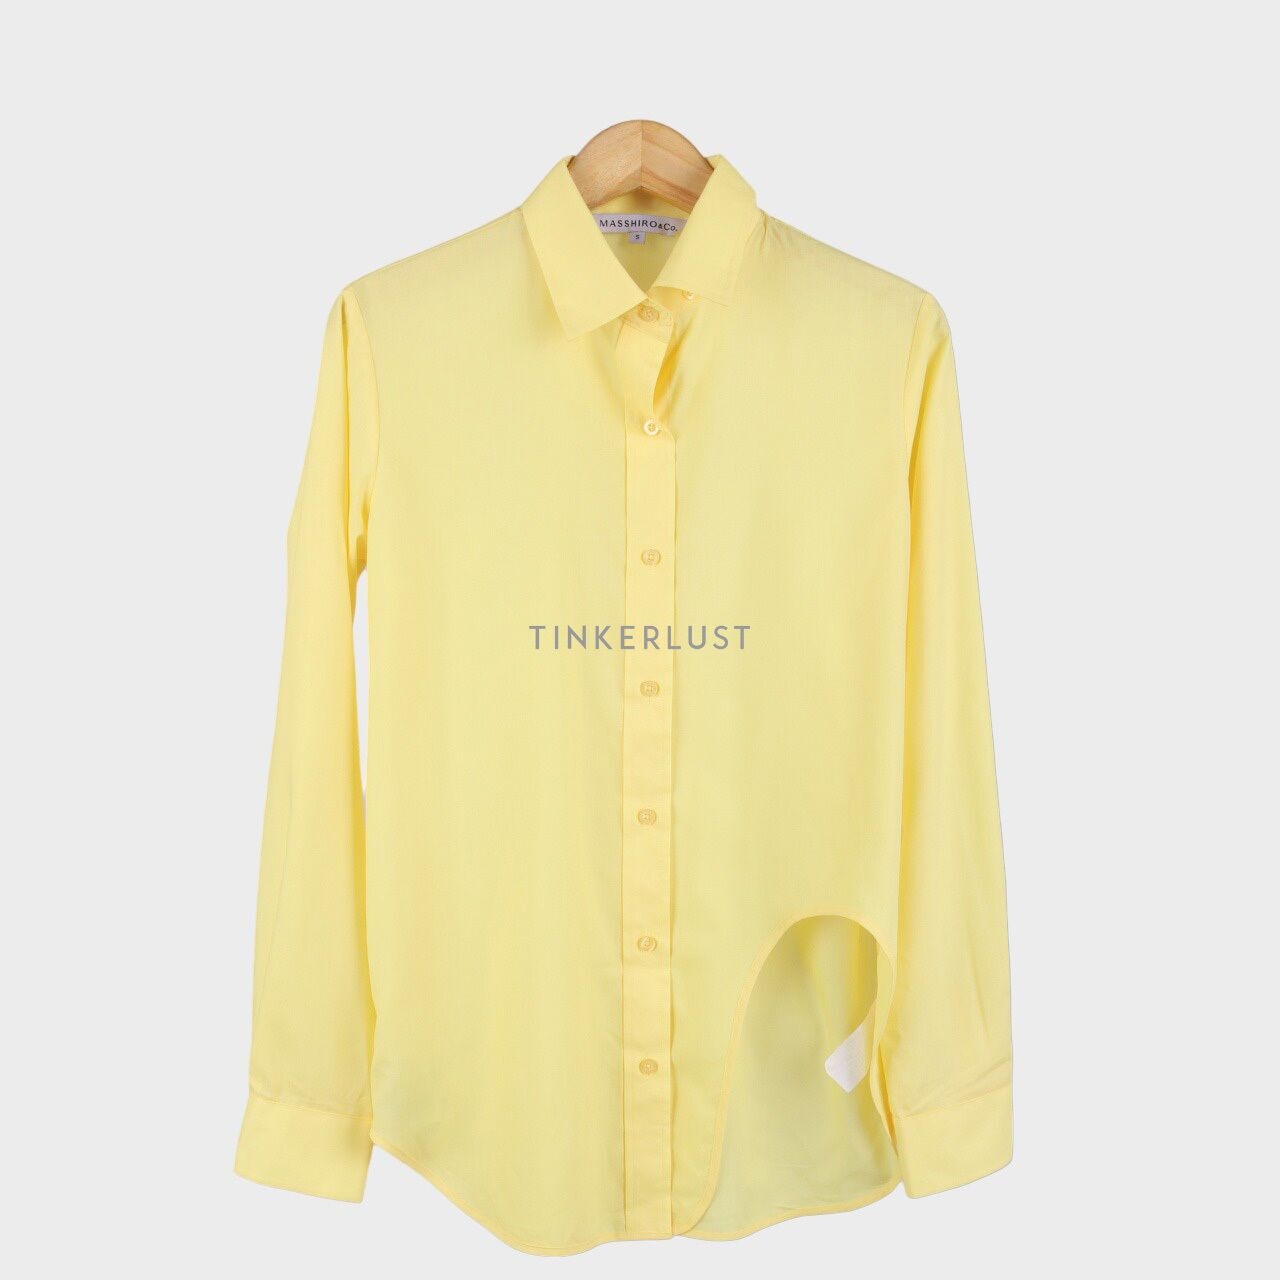 MASSHIRO&Co. Yellow Shirt